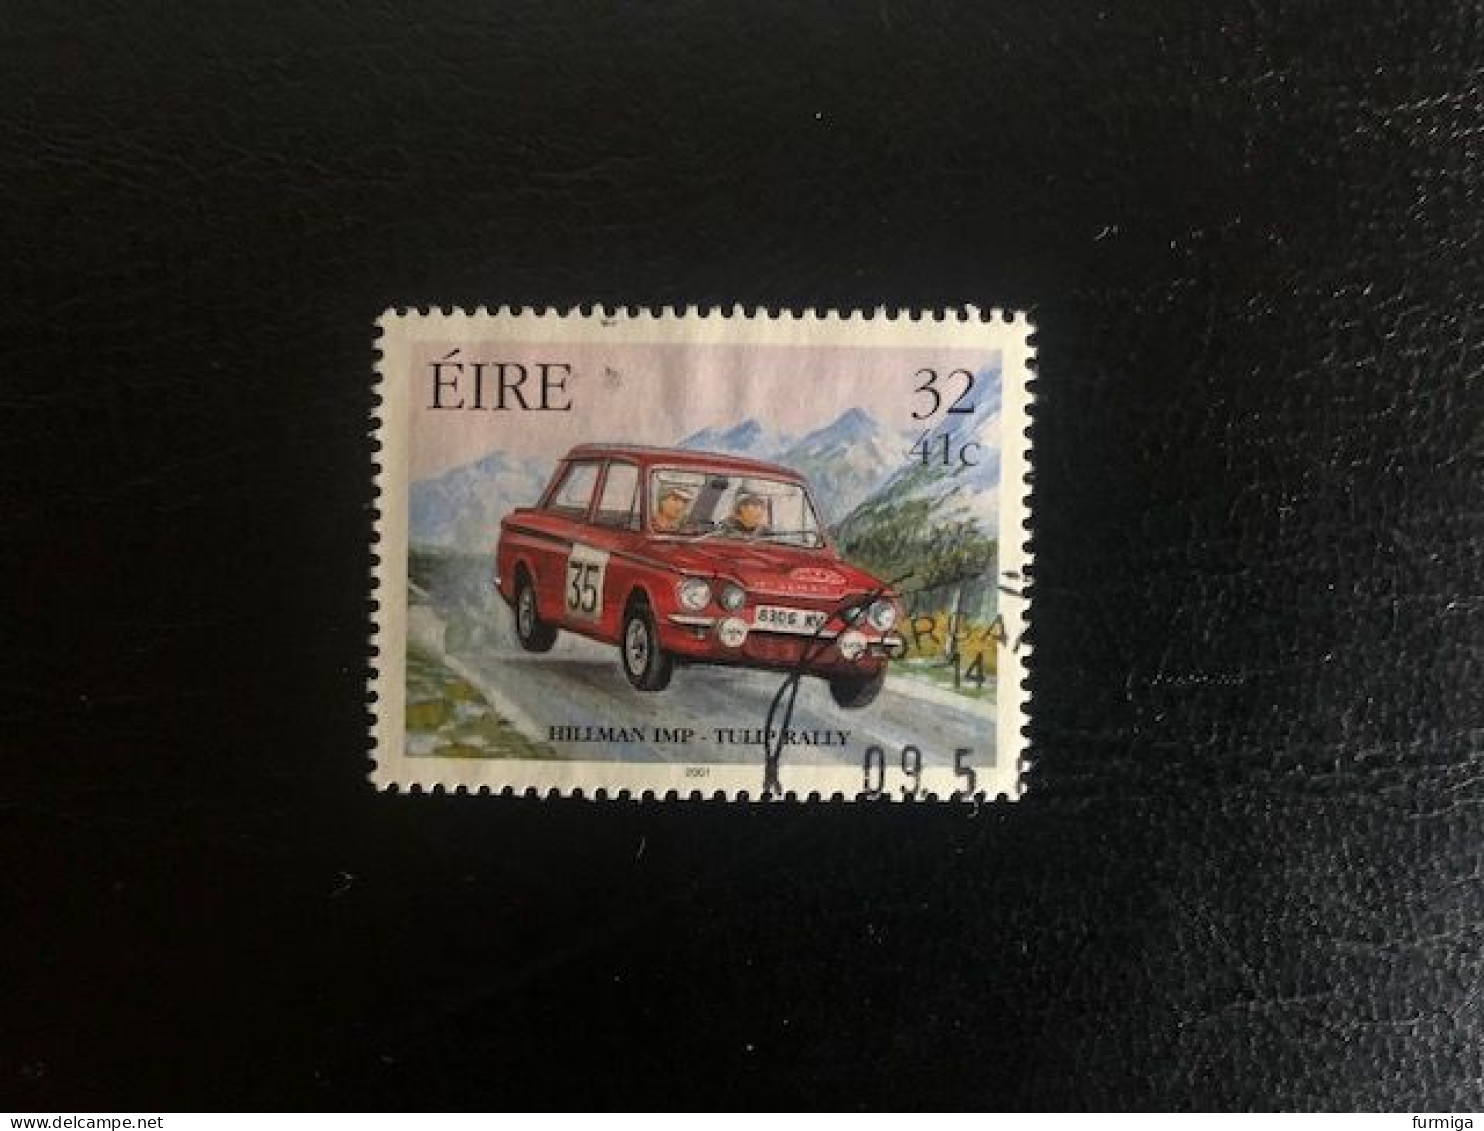 Irland EIRE 2001 - 1324 - Fein RUND Gestempelt - Fine Used LUX Postmark - Oblitérés